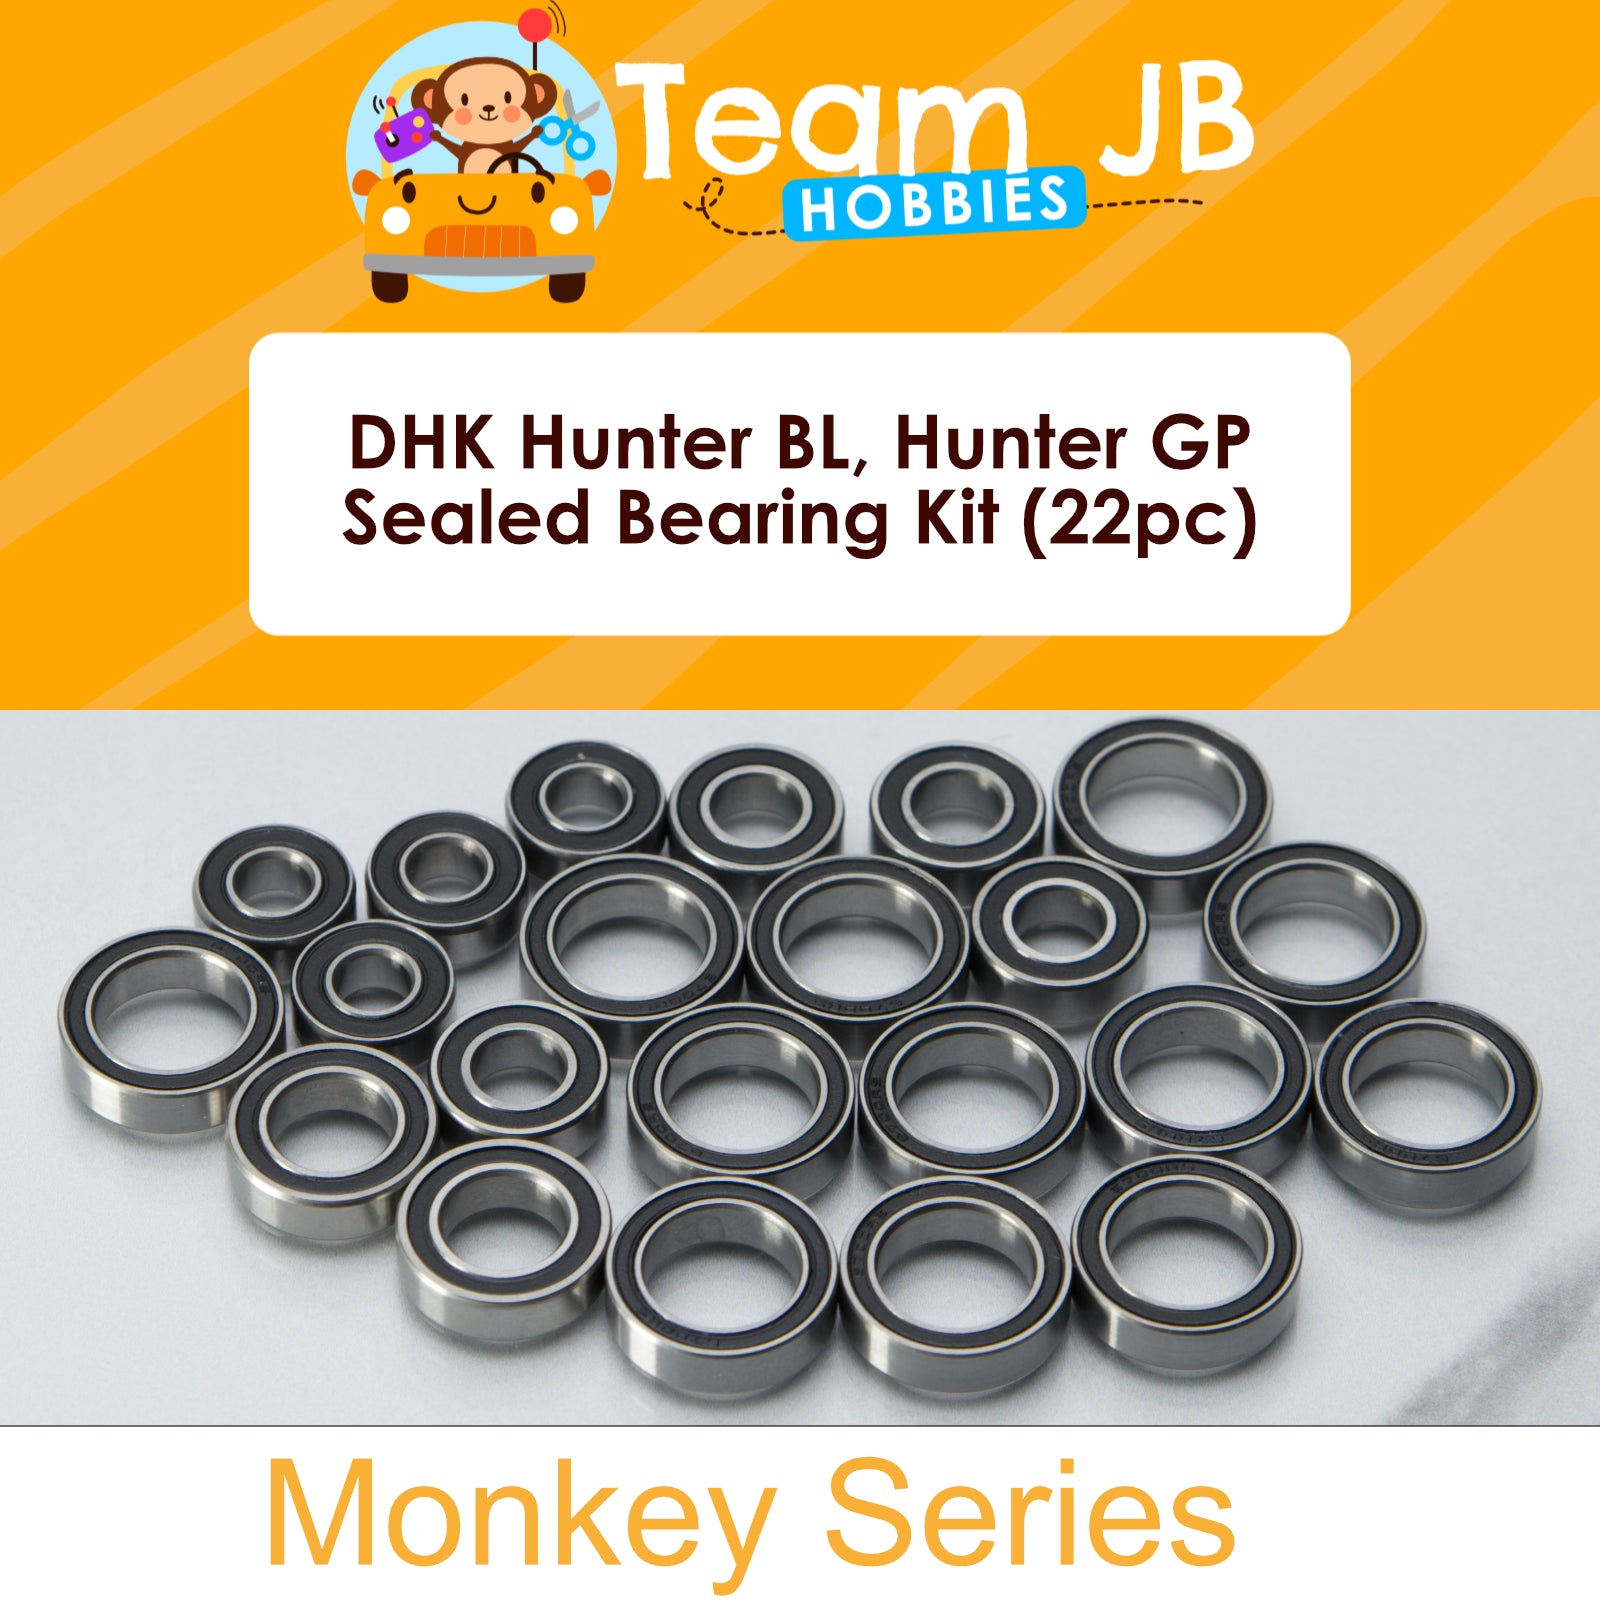 DHK Hunter BL, Hunter GP - Sealed Bearing Kit